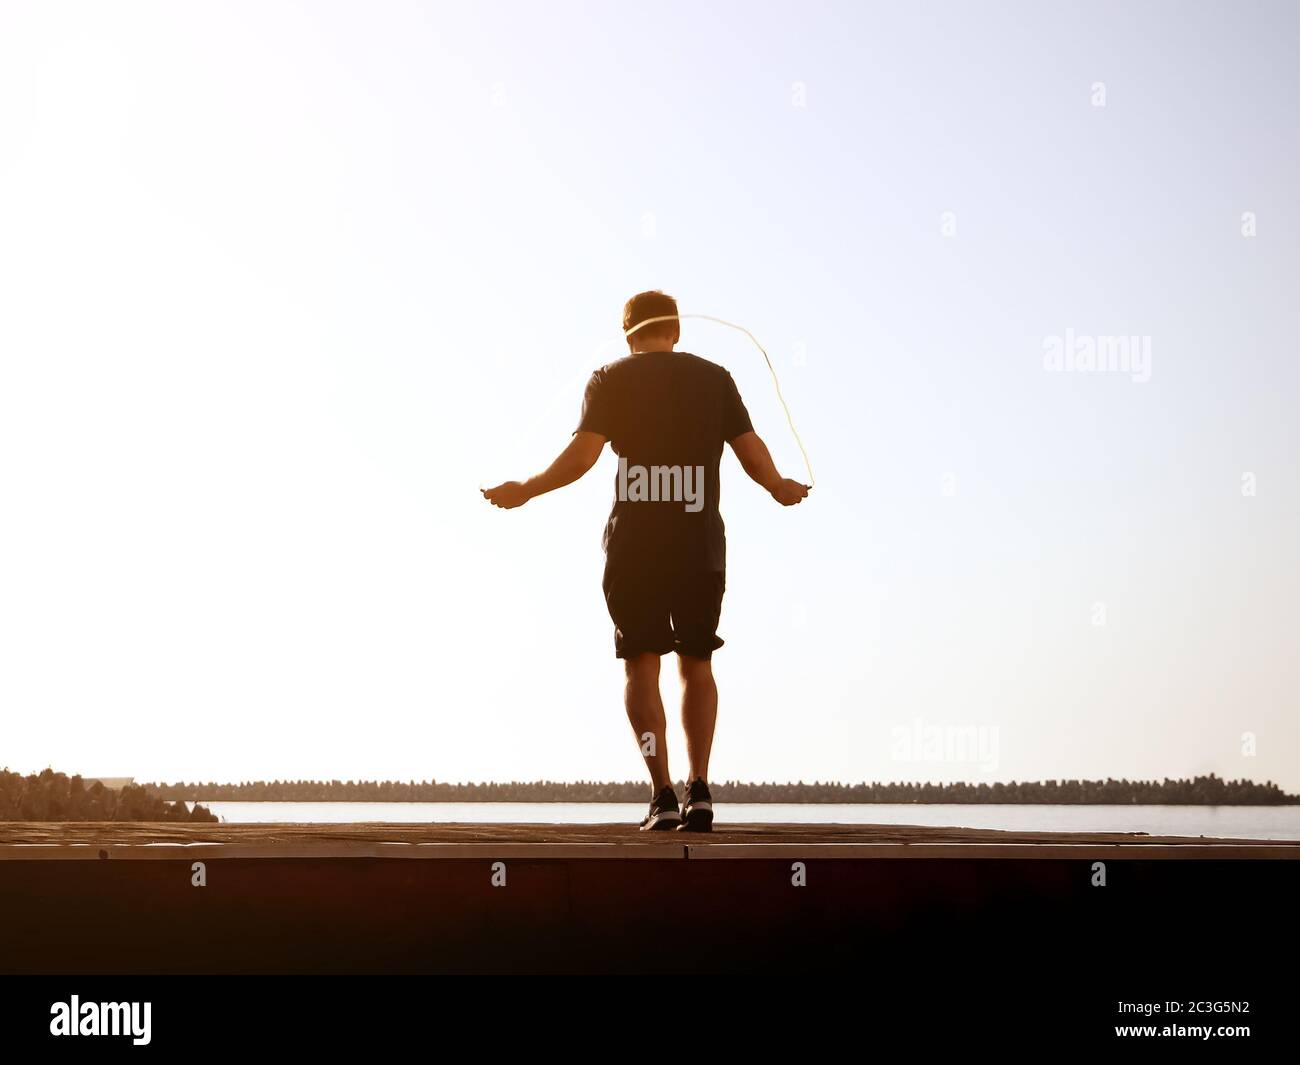 Mann in Shorts springt an einem sonnigen Tag am hintergrundigen Himmel auf einem Seil. Künstlerische Wirkung. Verschwommenes Bild Stockfoto